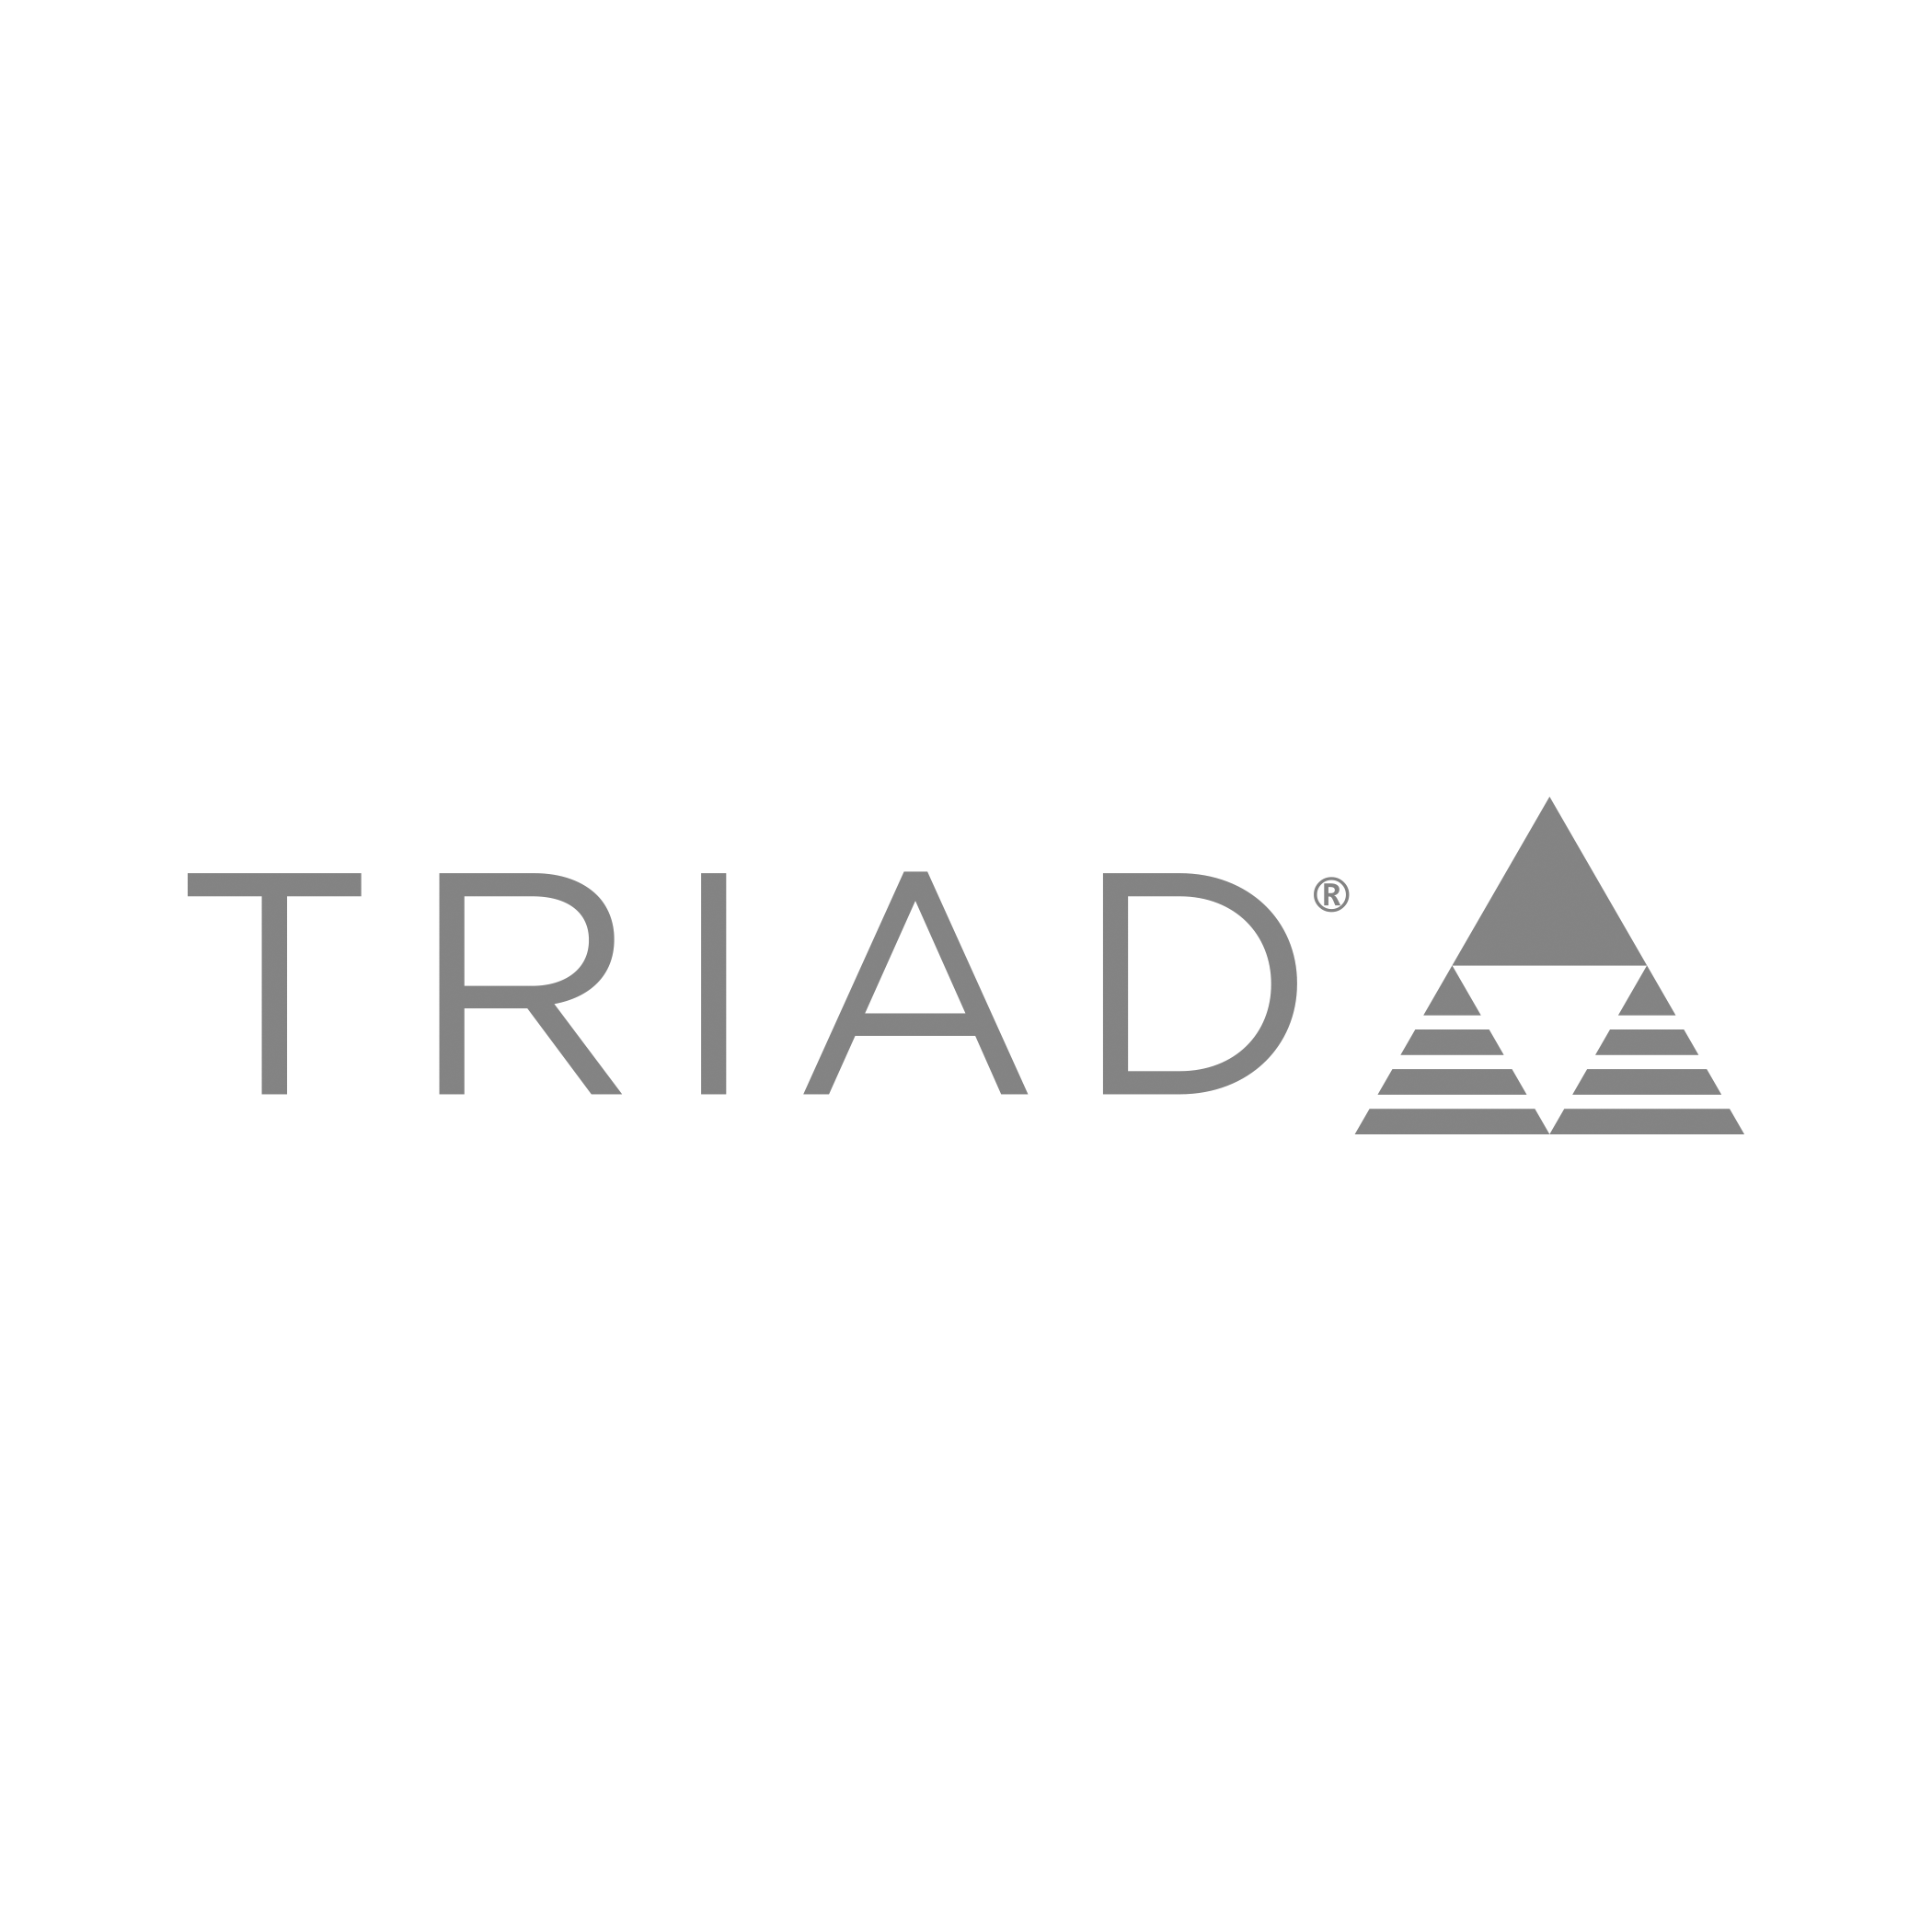 triad_logo_gray.png